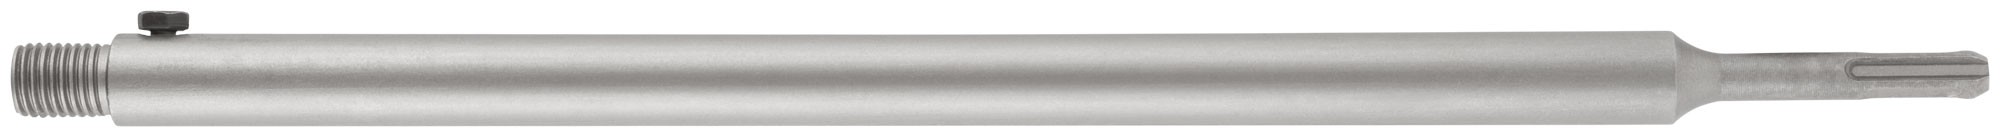 Удлинитель с хвостовиком SDS-PLUS для коронок по бетону алмазных, резьба М16, длина 400 мм